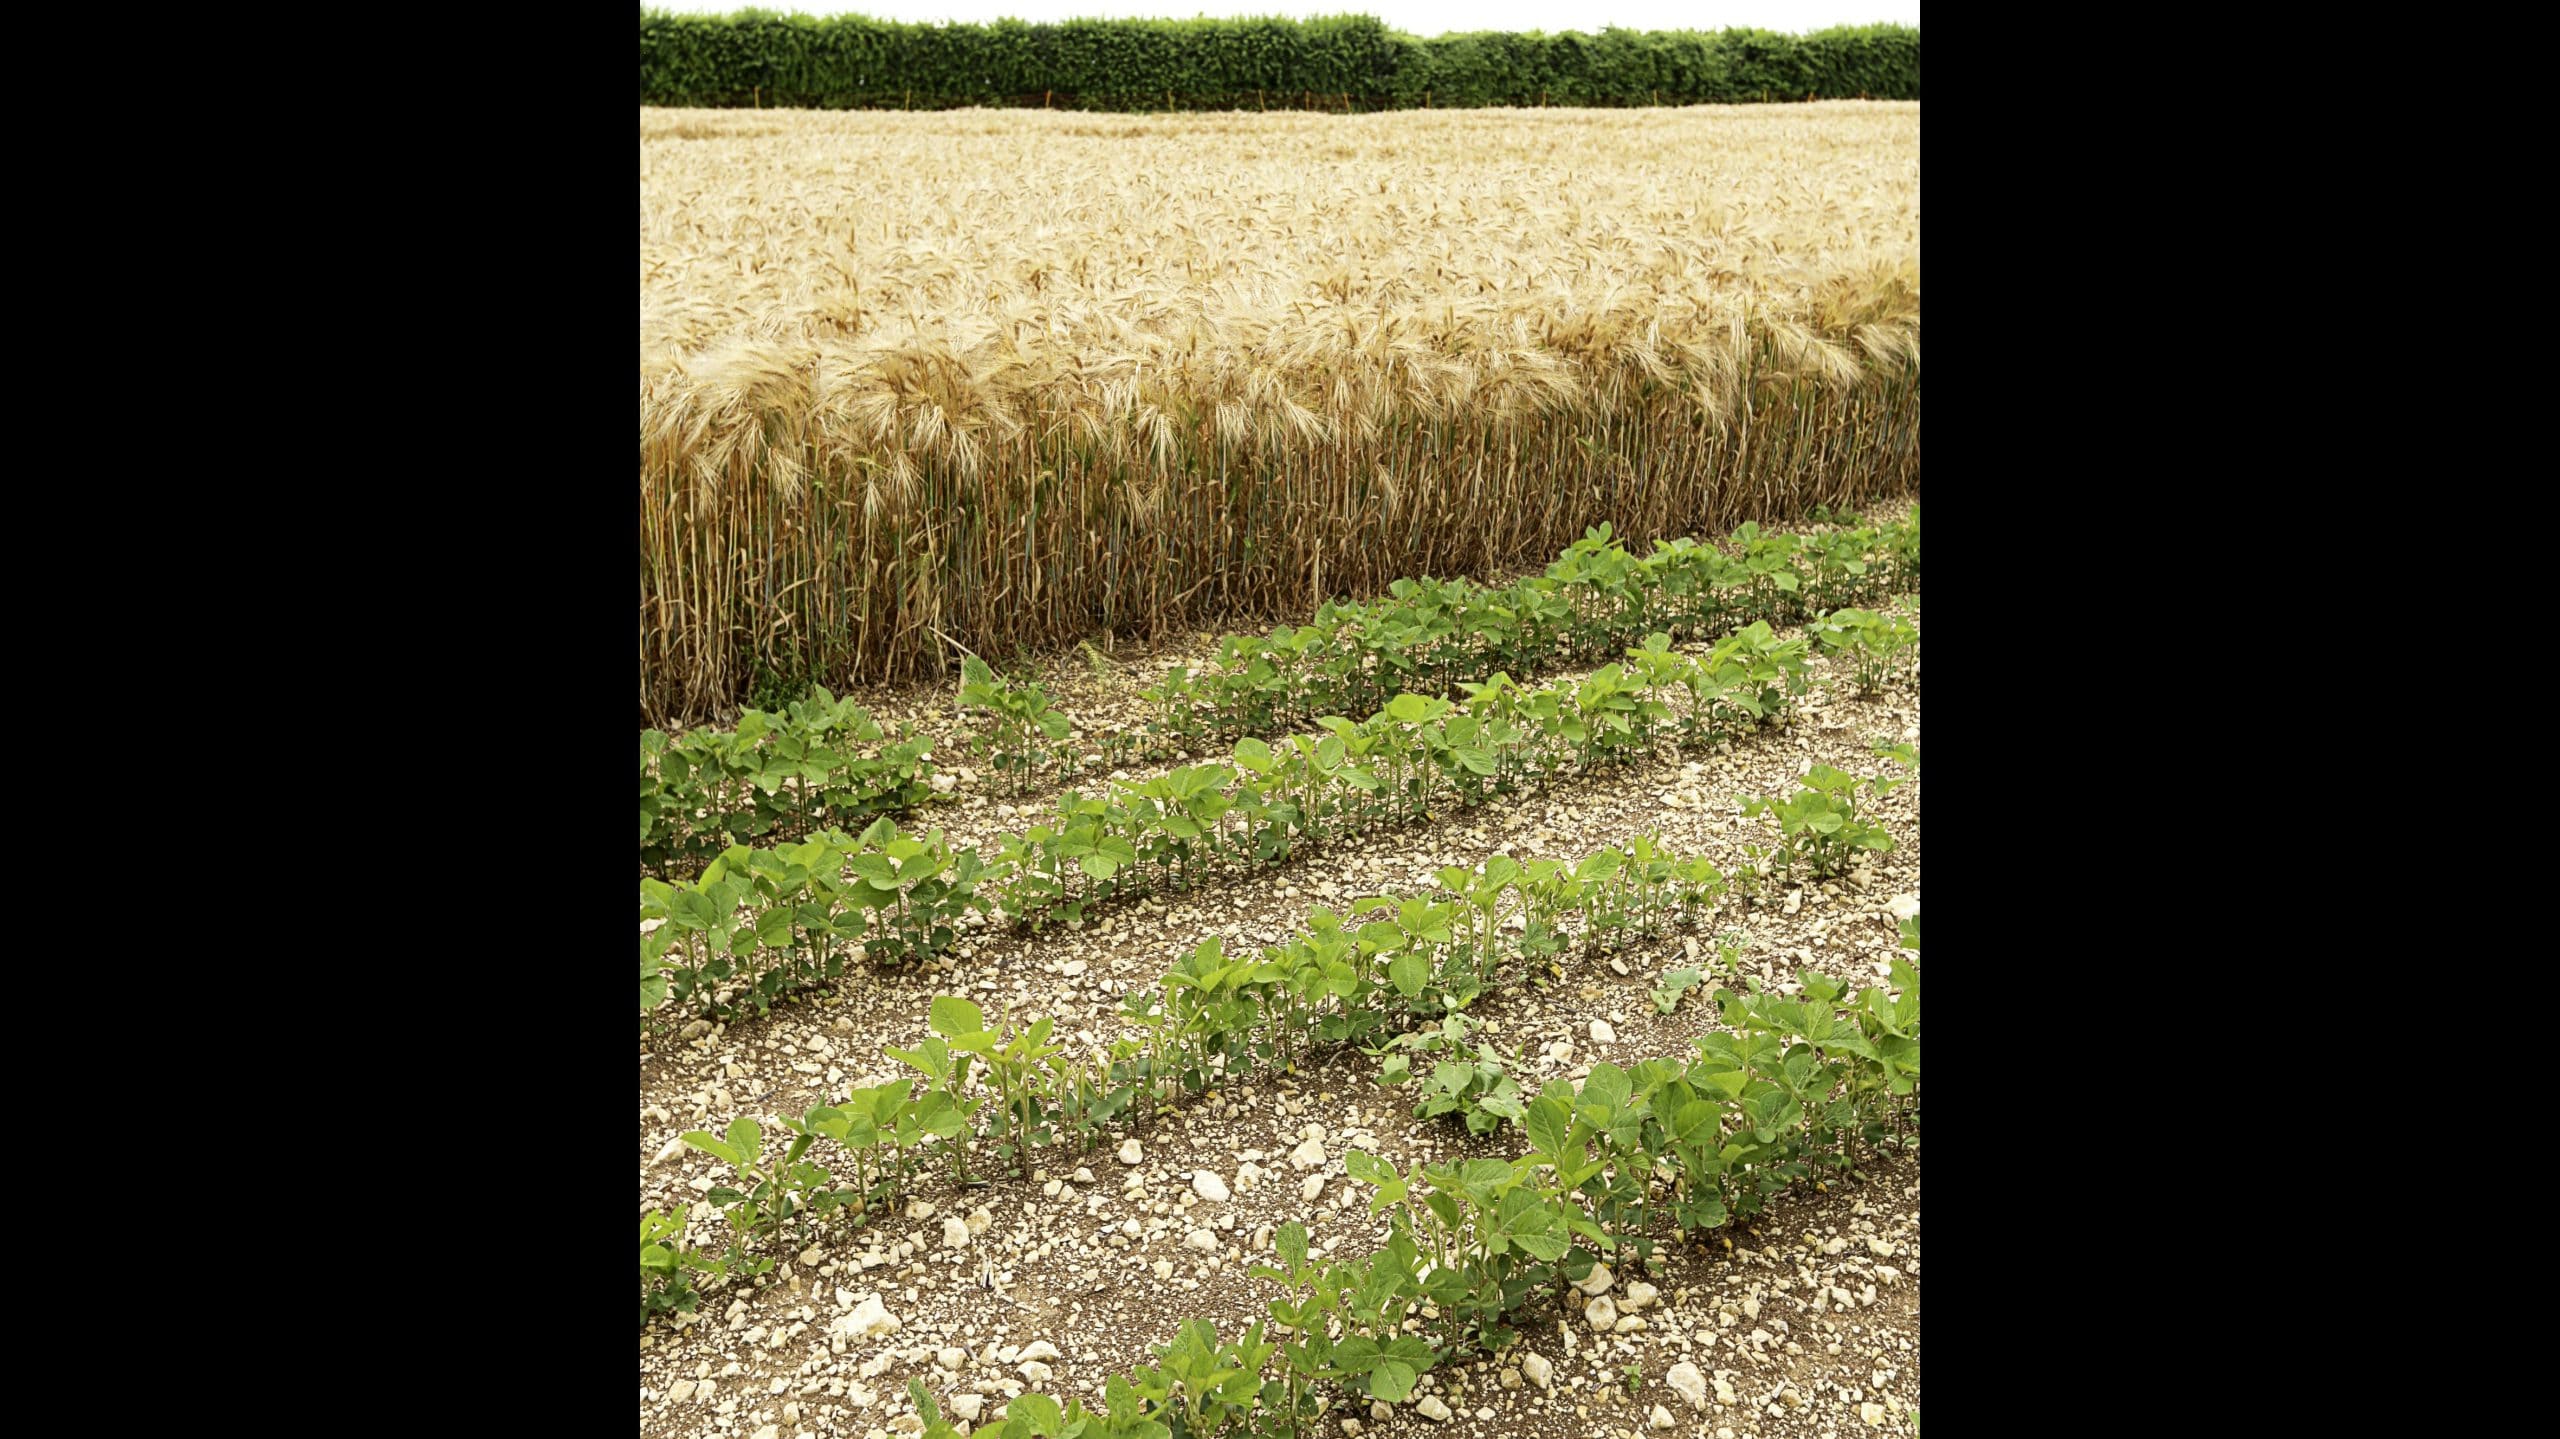 La moitié nord de France s'intéresse à la culture du soja